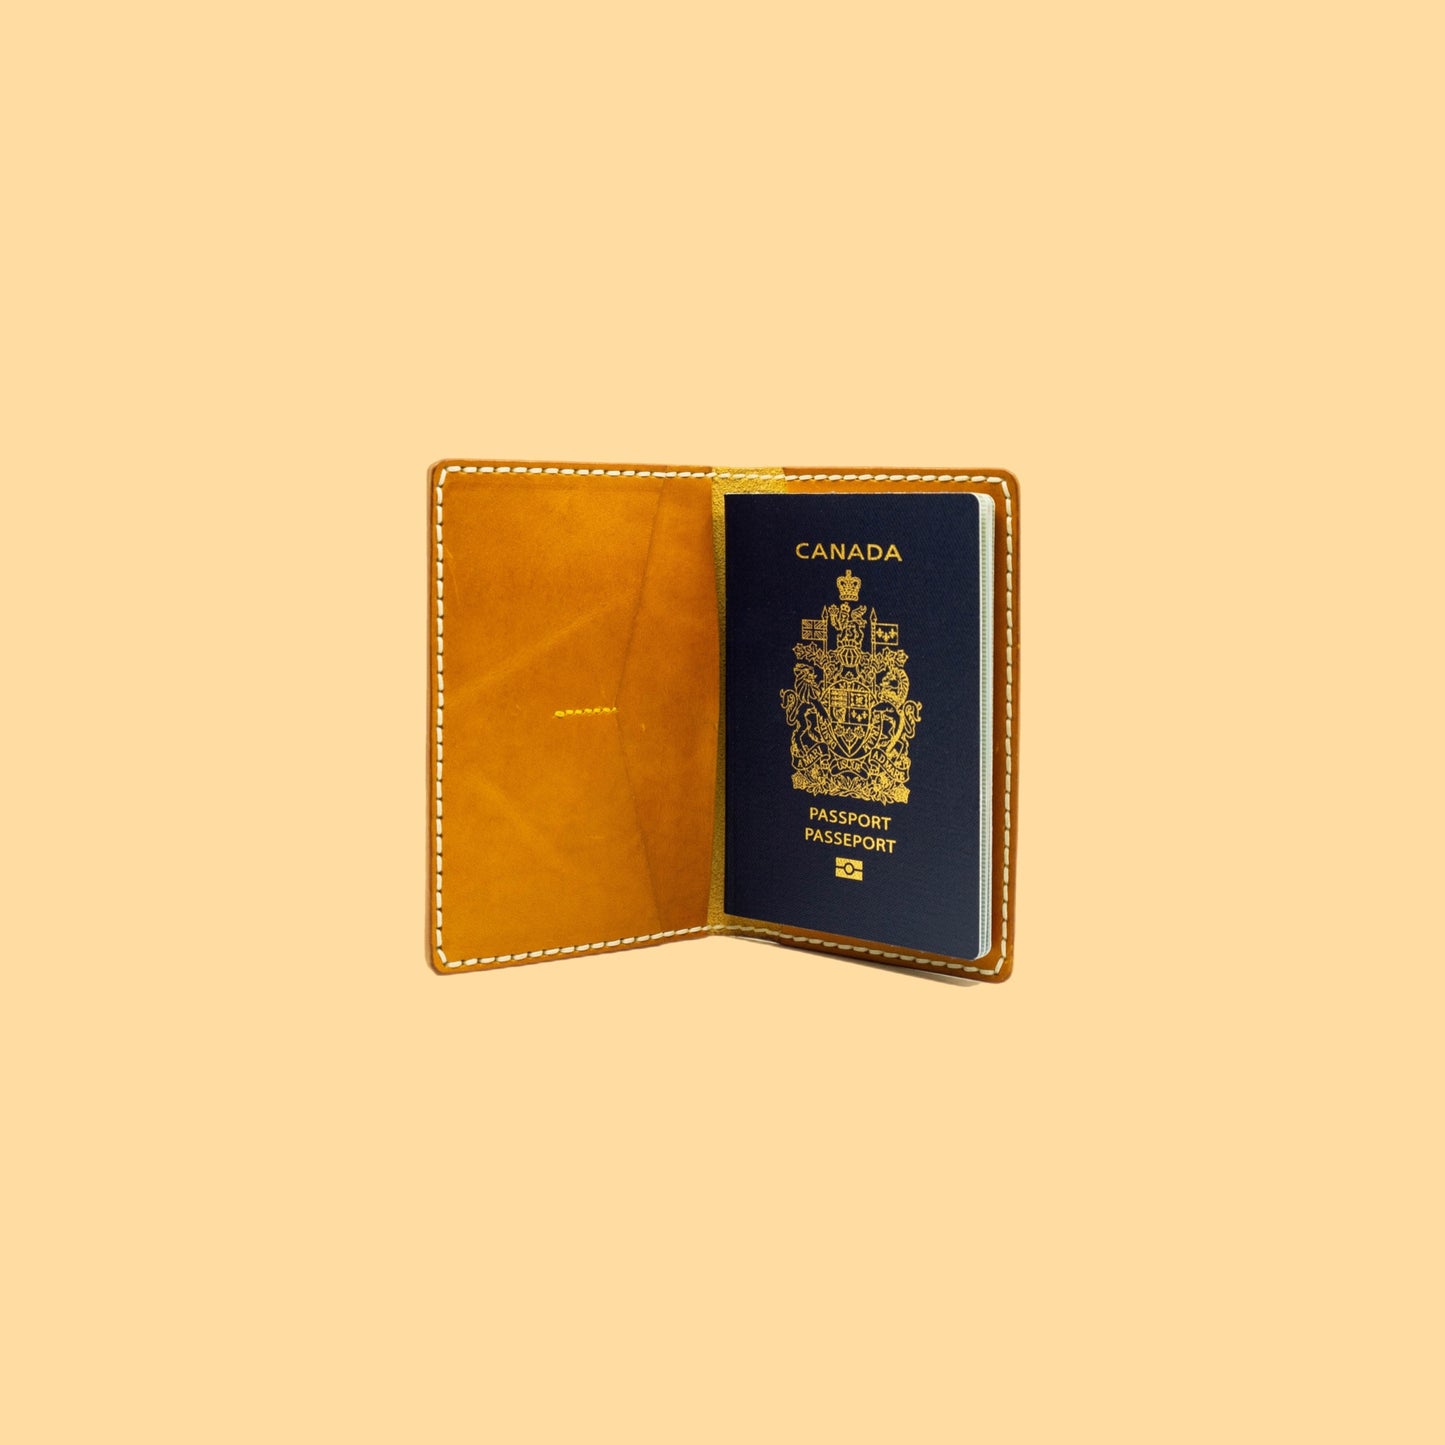 The Passport Wallet